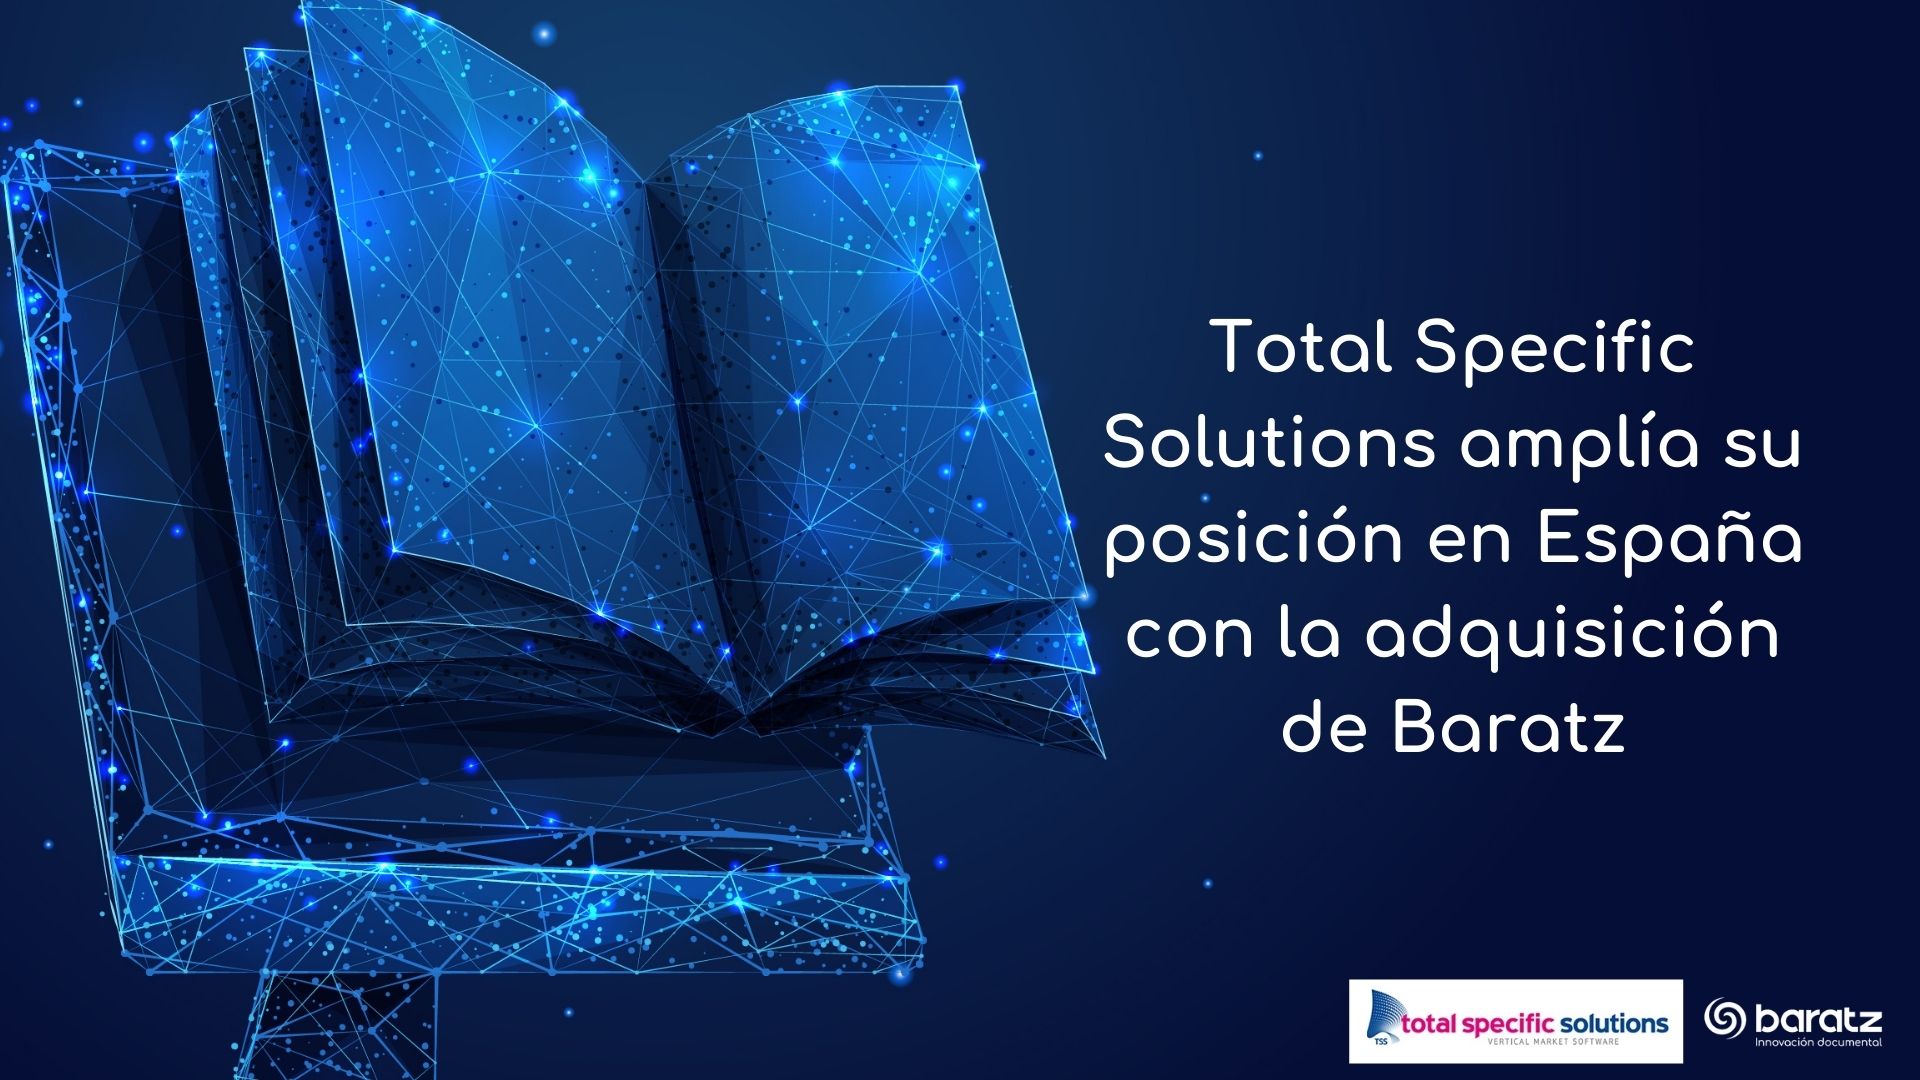 Total Specific Solutions amplía su posición en España con la adquisición de Baratz